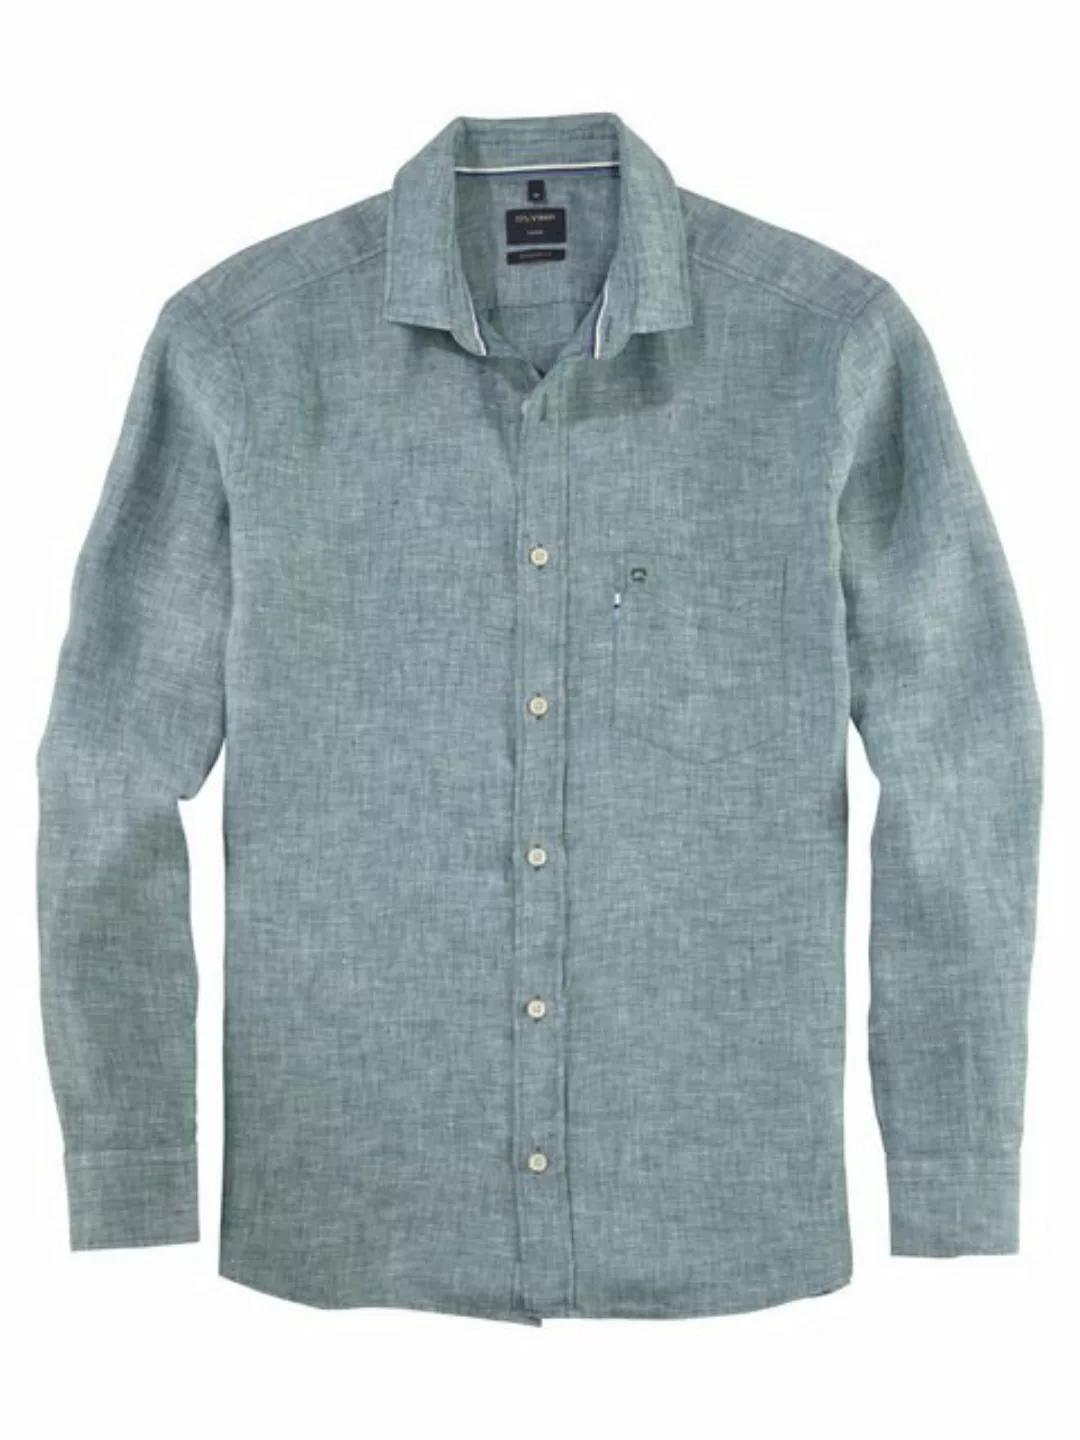 OLYMP Leinenhemd 4026/54 Hemden günstig online kaufen